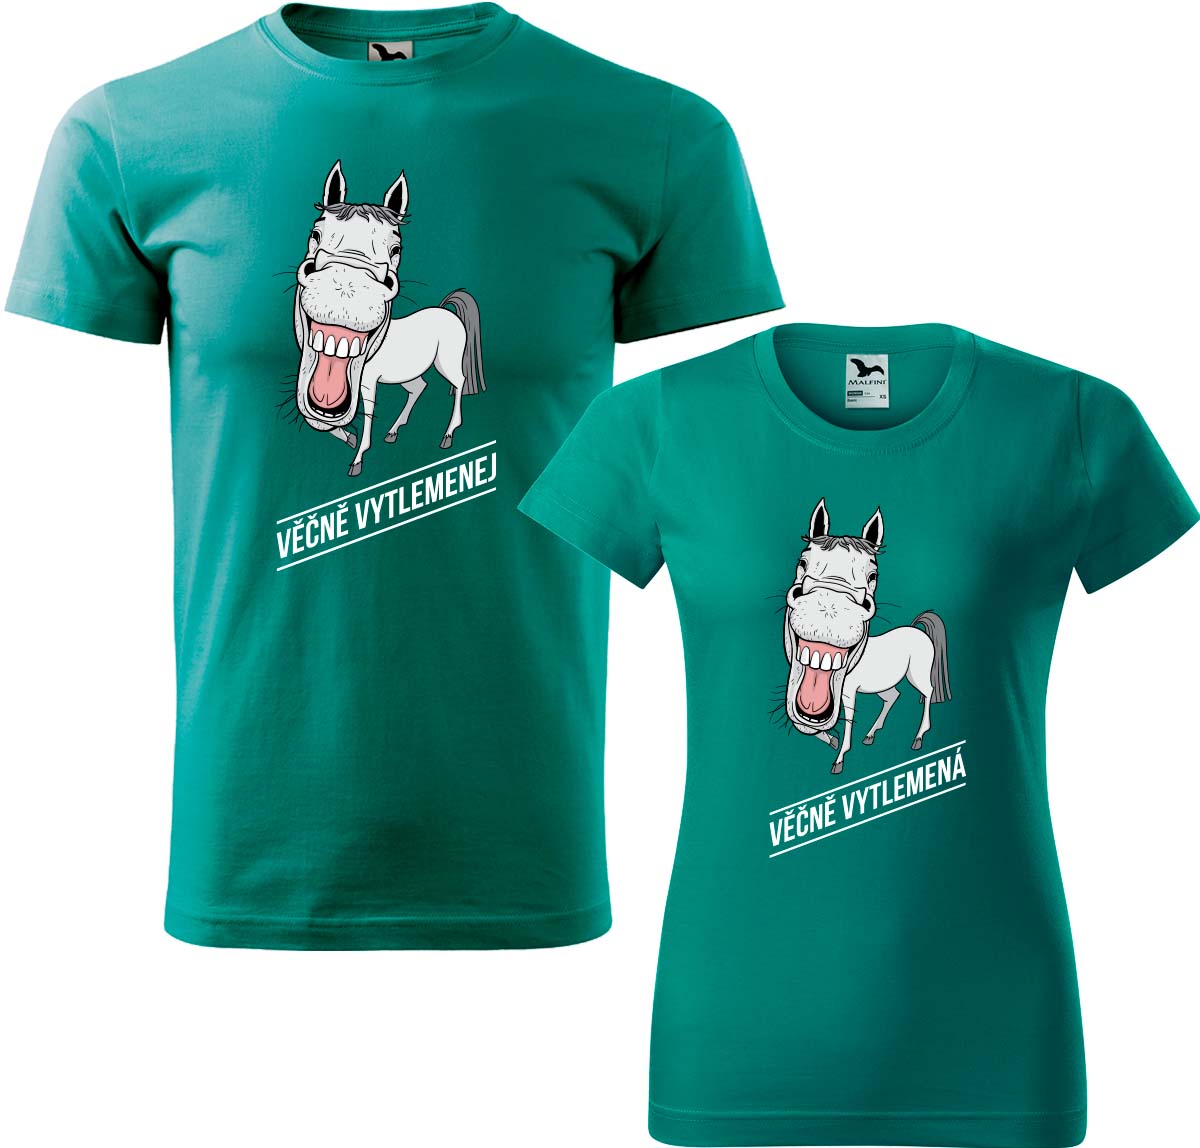 Trička pro páry - Věčně vytlemenej a věčně vytlemená Barva: Emerald (19), Velikost dámské tričko: XL, Velikost pánské tričko: XL